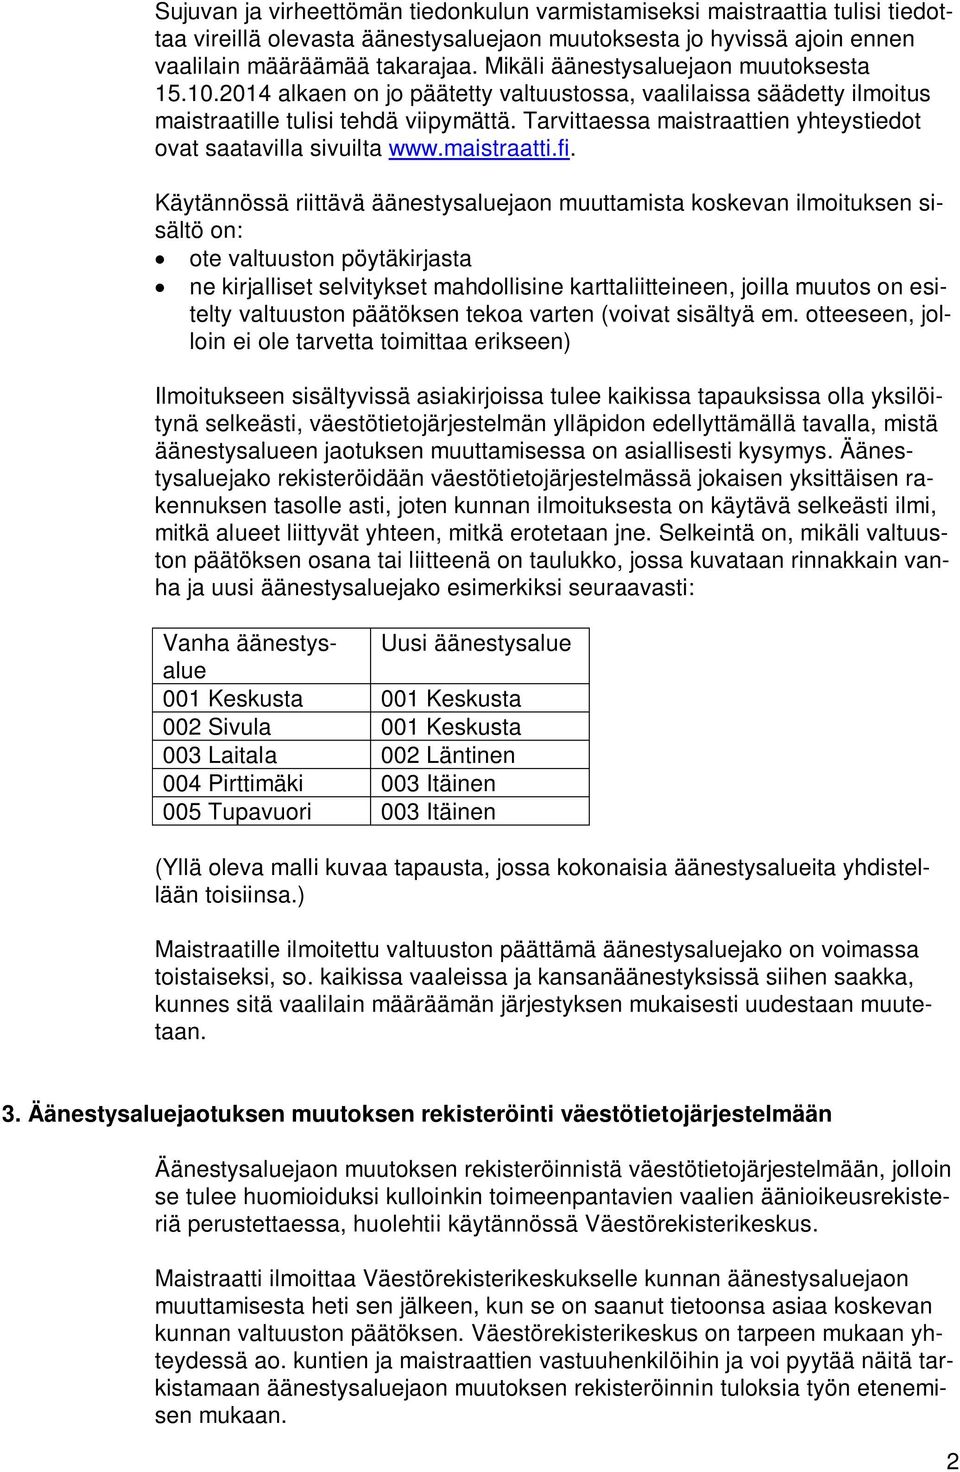 Tarvittaessa maistraattien yhteystiedot ovat saatavilla sivuilta www.maistraatti.fi.